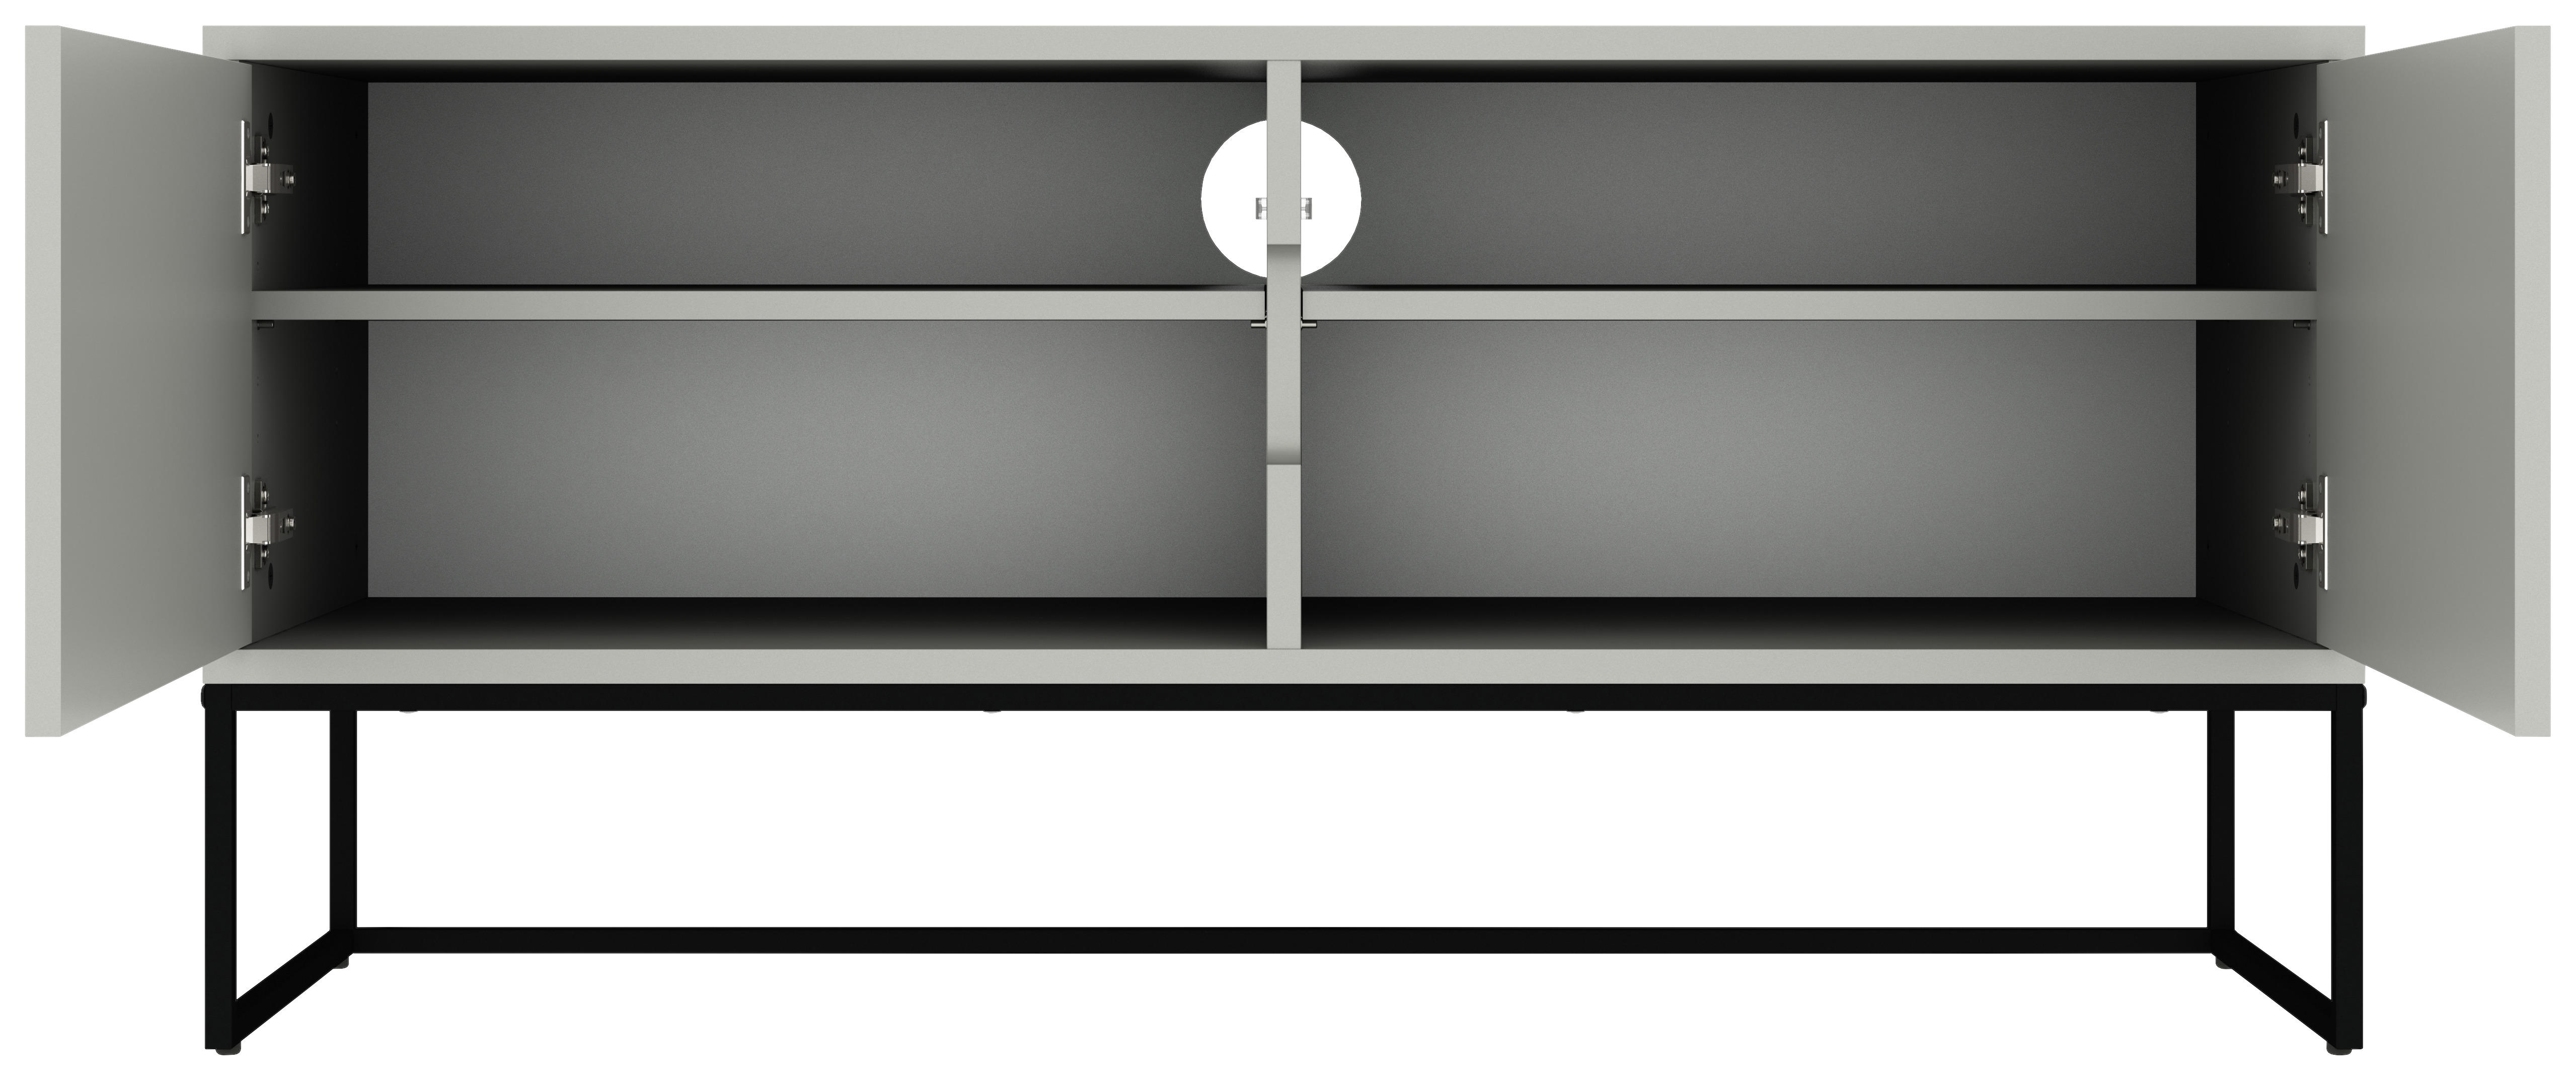 LOWBOARD Weiß  - Schwarz/Weiß, Design, Holzwerkstoff/Metall (118/57/43cm)